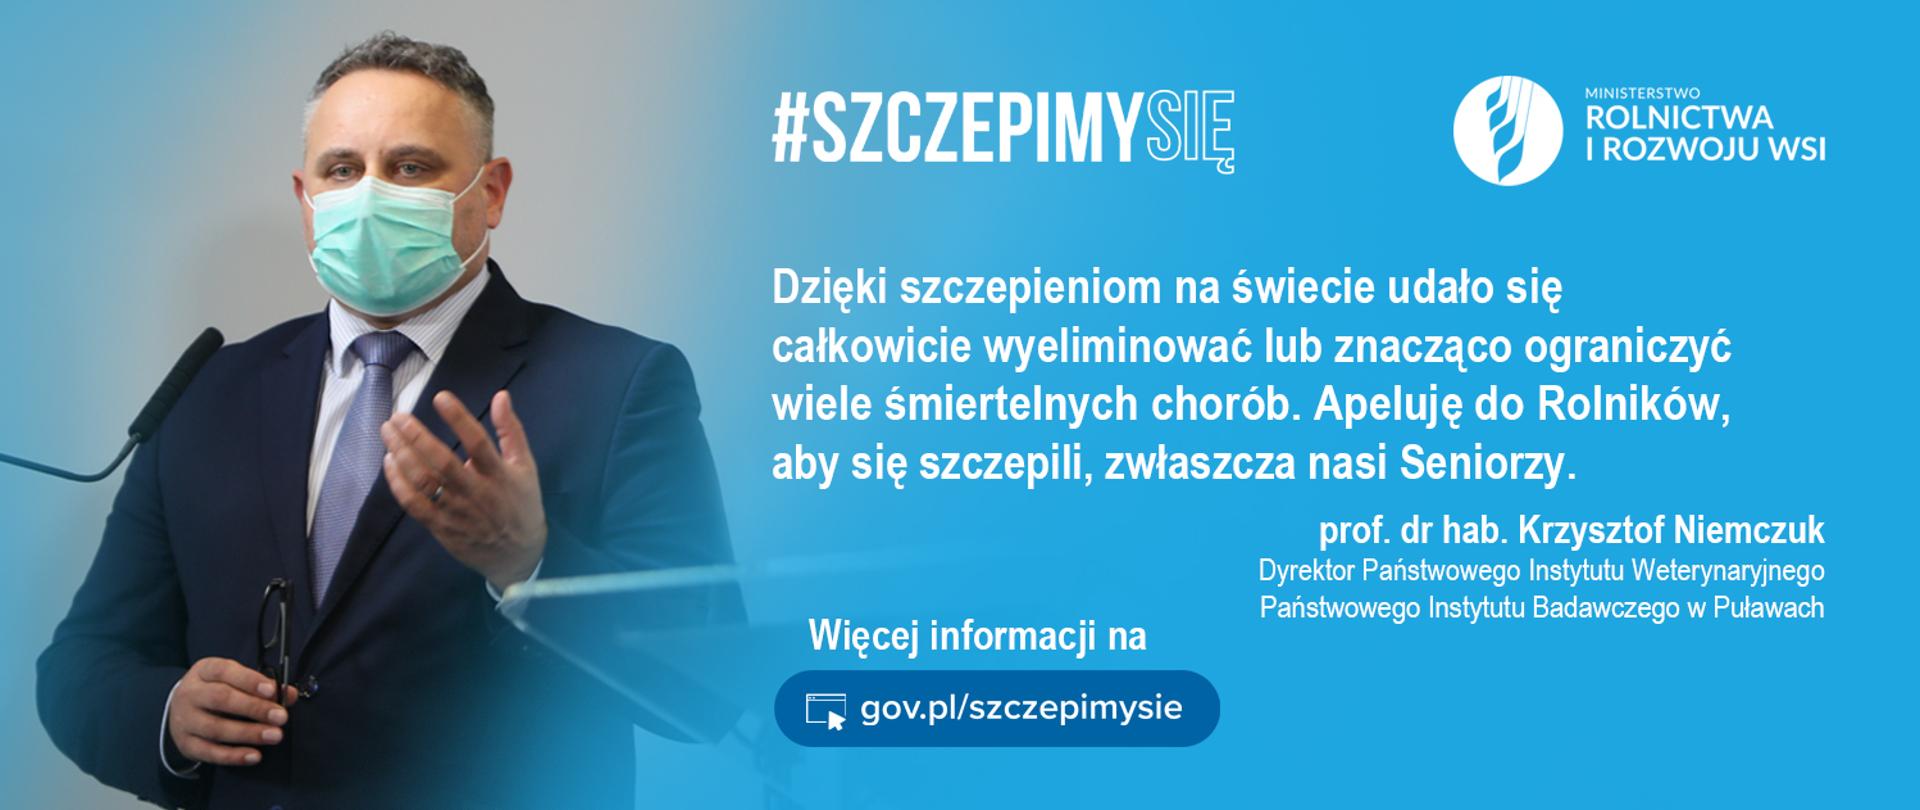 grafika do komunikatu "Szczepimy się! Rolniku zarejestruj się, Ty także!"
prof. dr hab. Krzysztof Niemczuk.